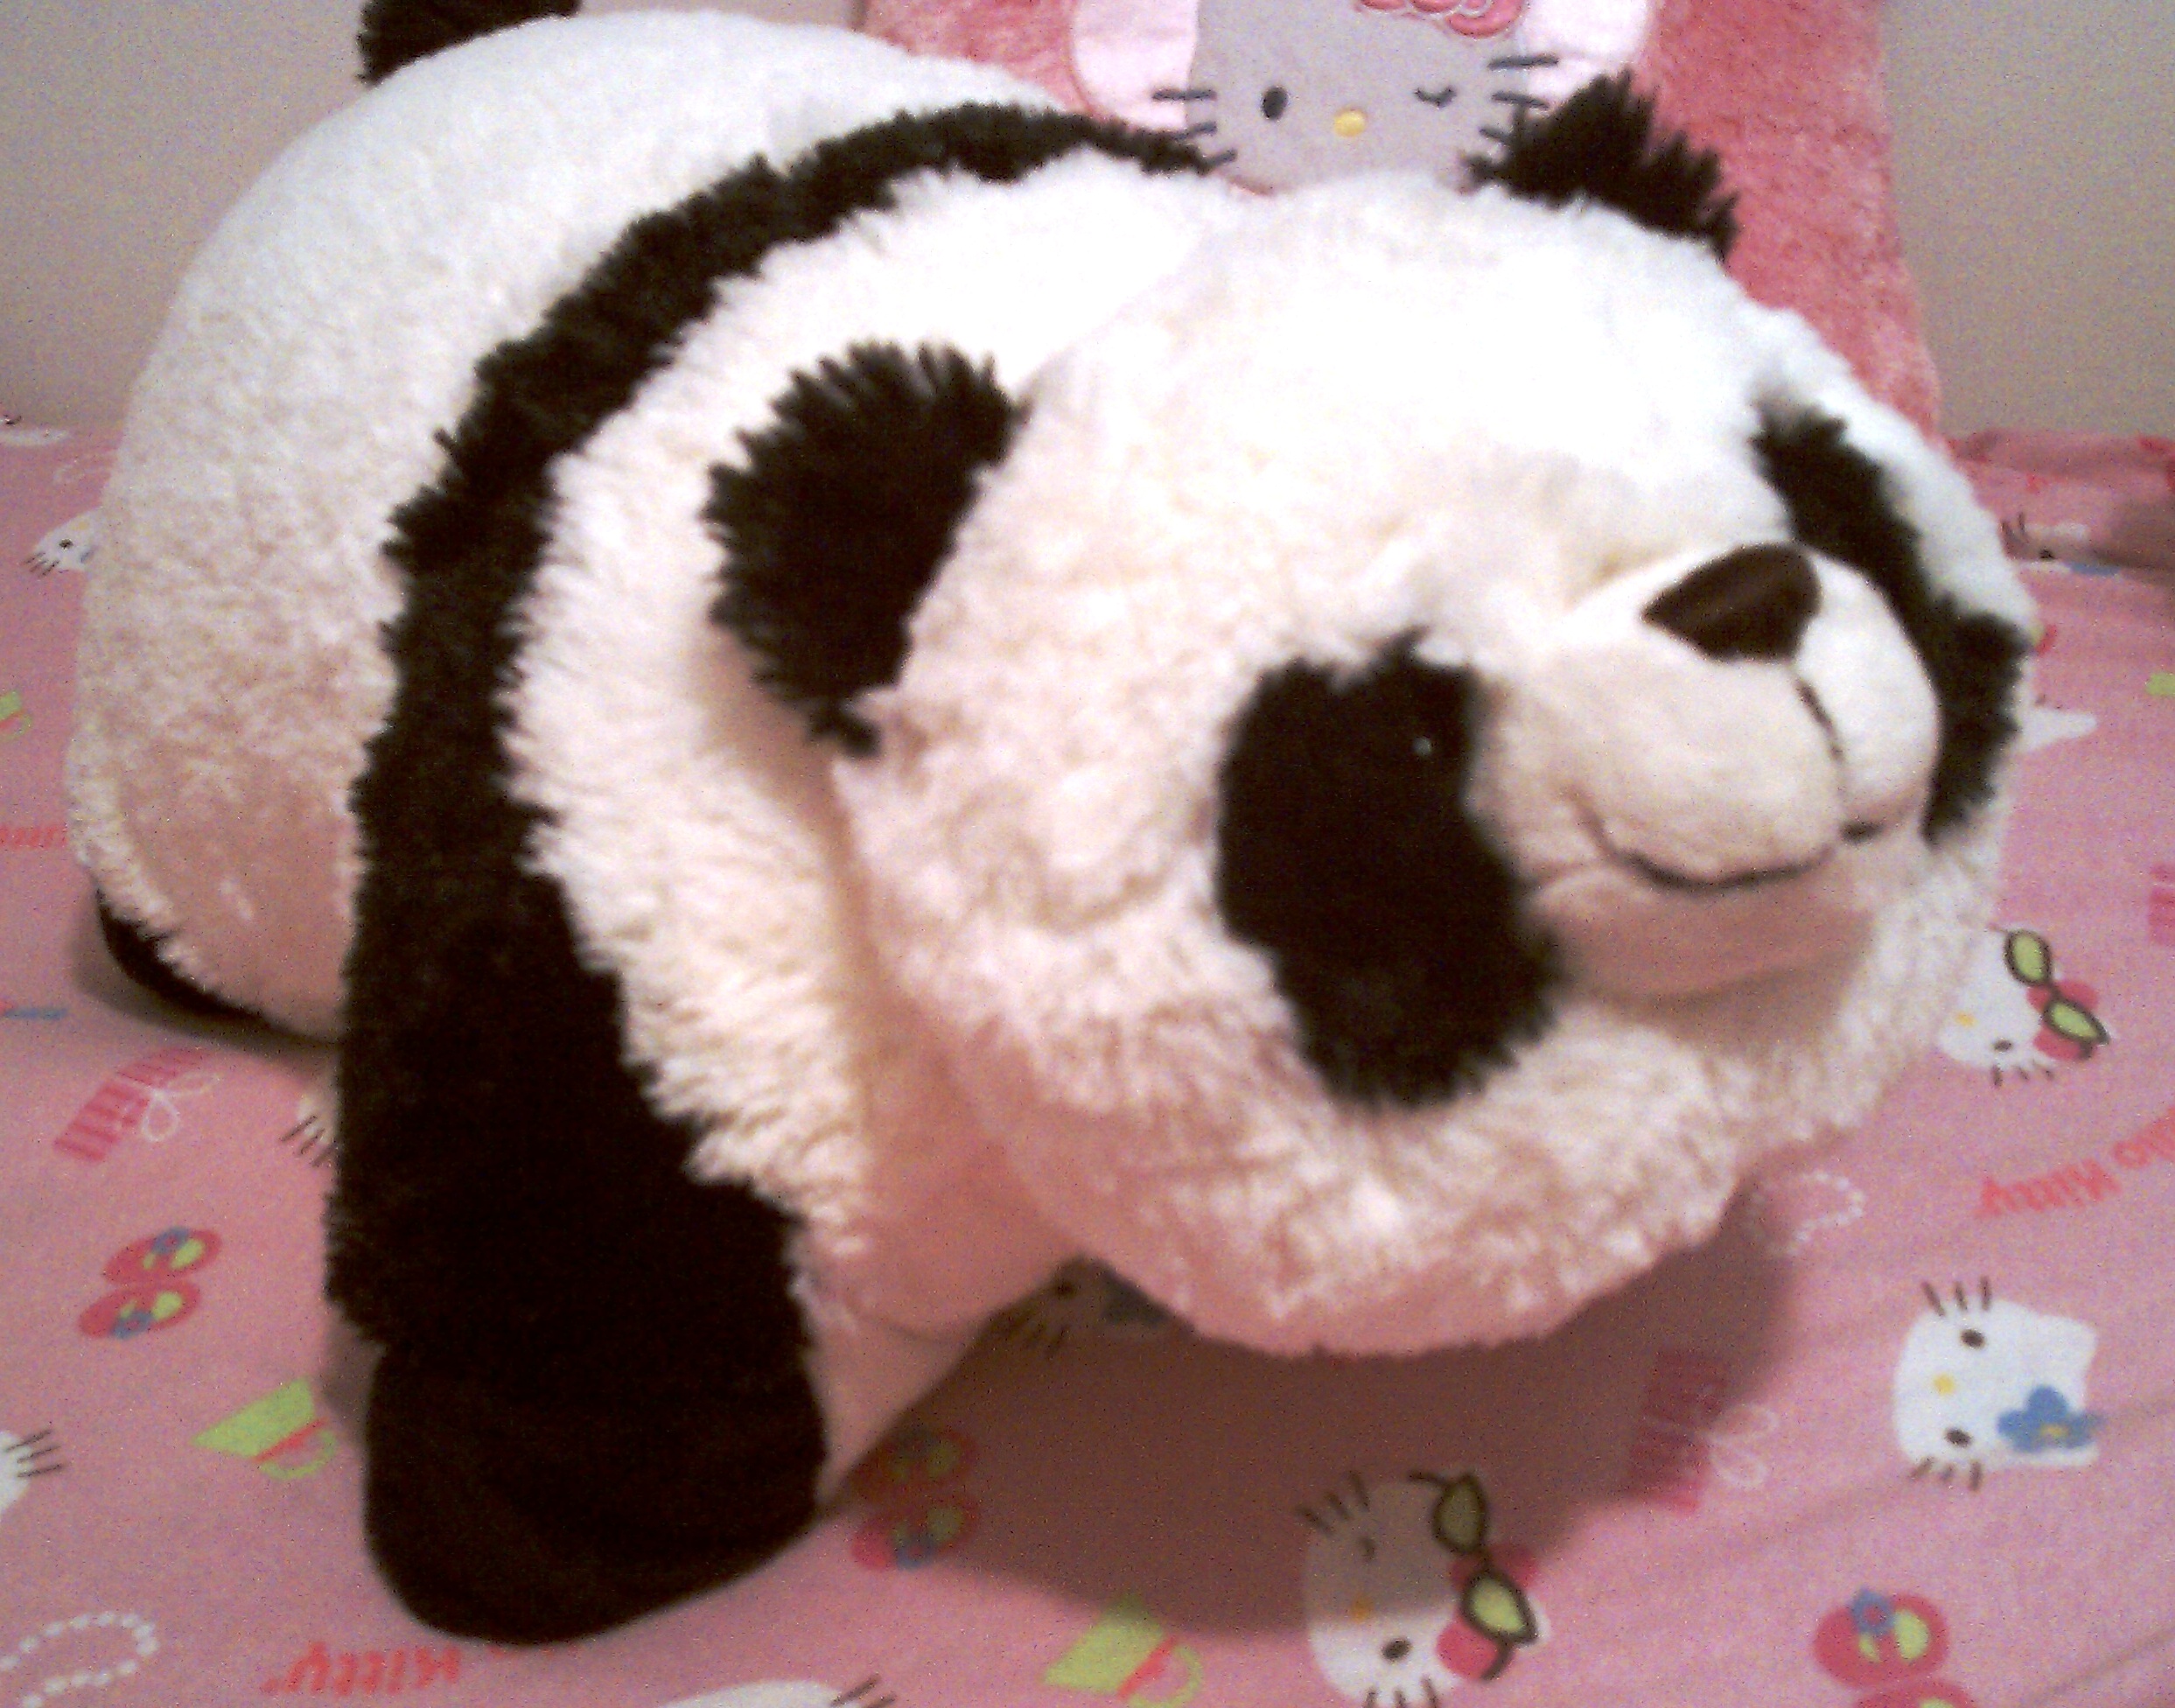 panda pillow pet